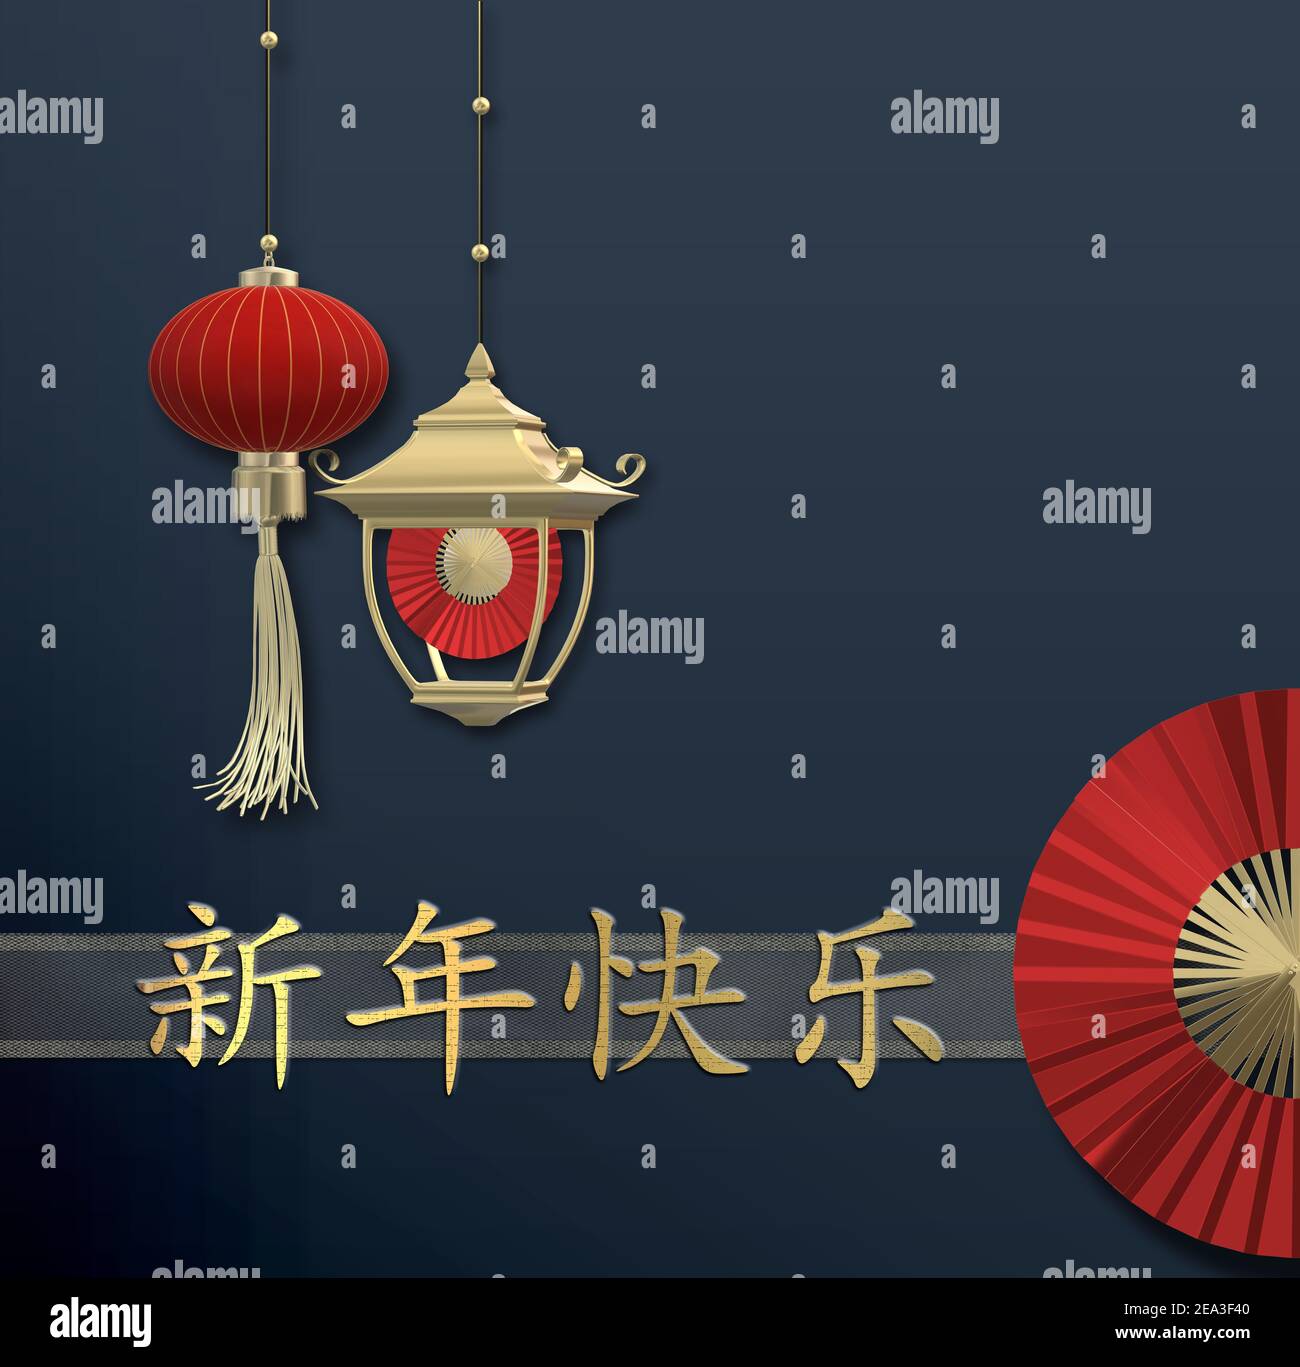 Décoration chinoise du nouvel an sur fond bleu. Lanternes en papier rouge, éventail rouge sur bleu. Traduction chinoise bonne année chinoise. Moderne résumé ele Banque D'Images